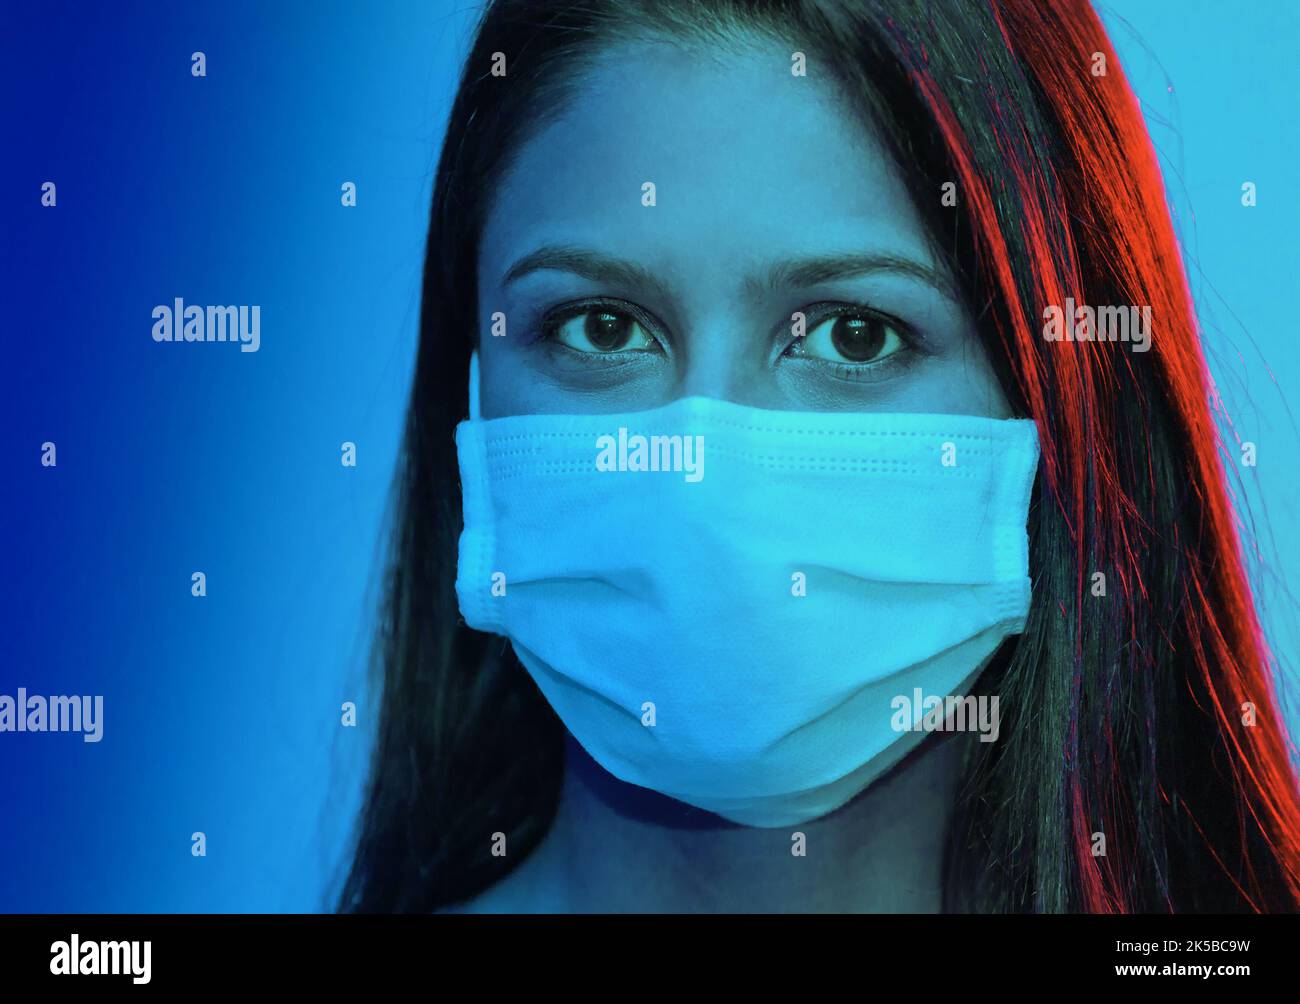 Portrait en deux tons d'une jeune femme portant un masque chirurgical. Concept médical. Banque D'Images